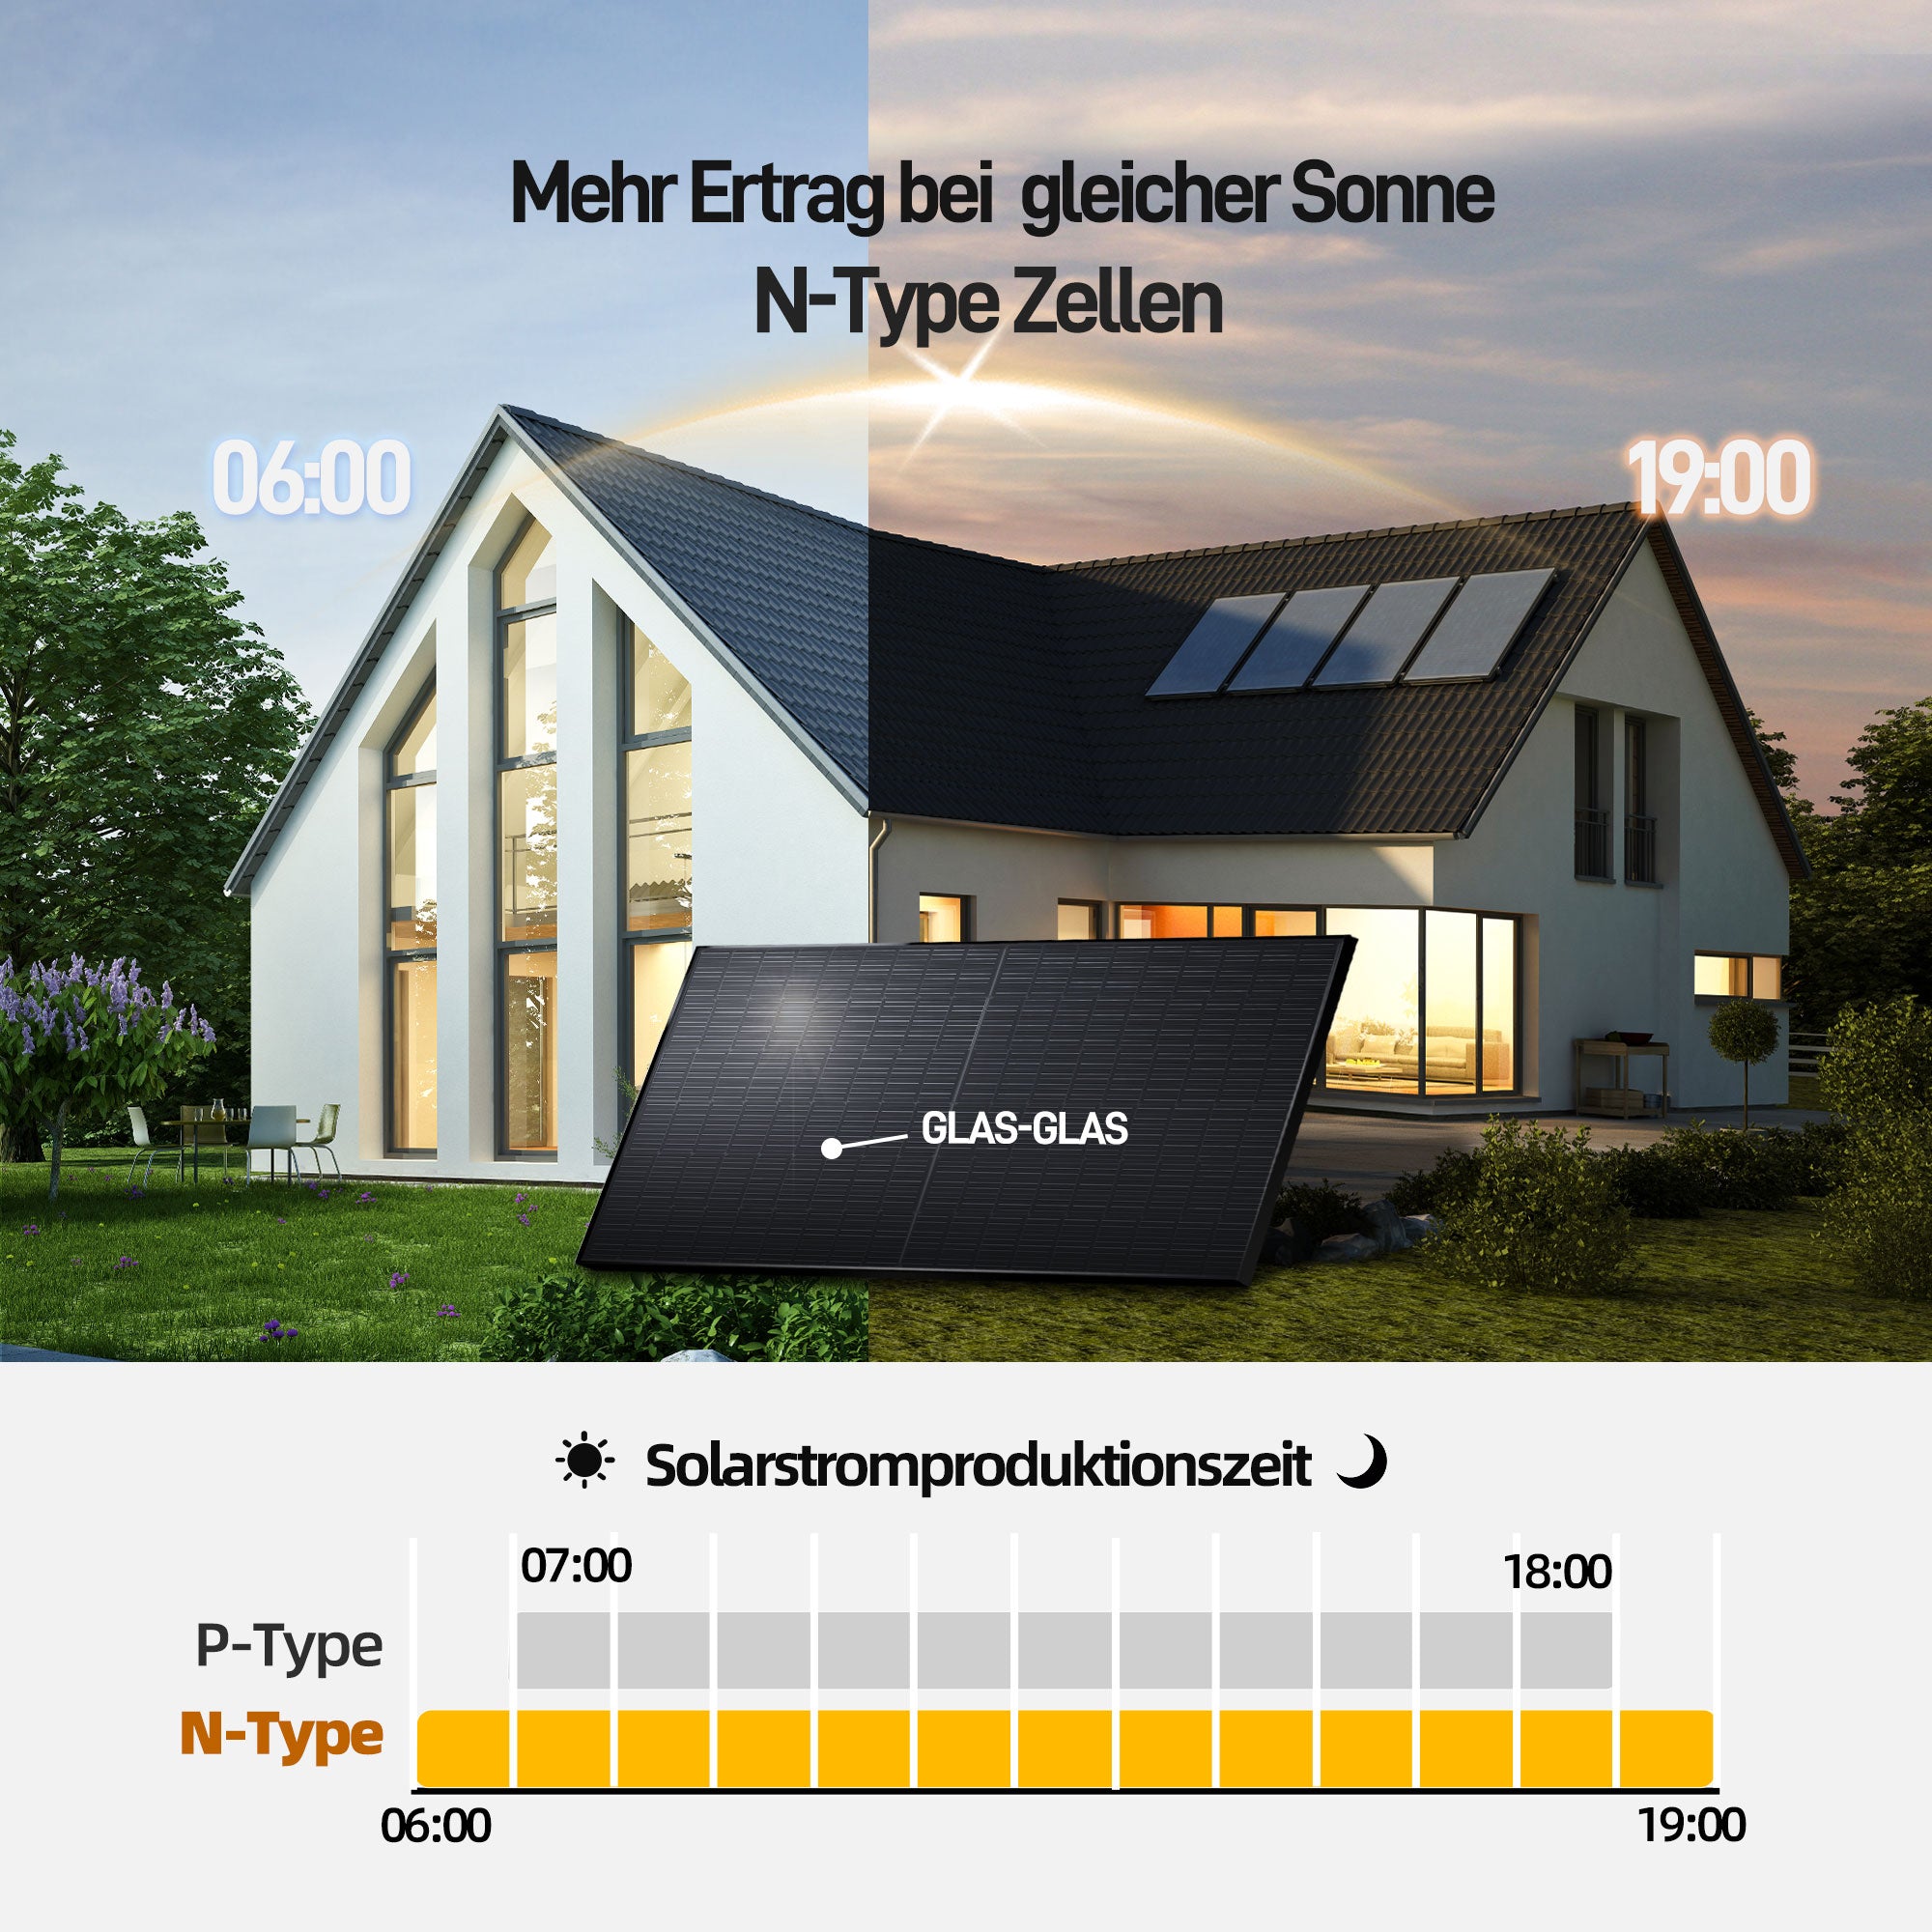 EFORU 960W Komplettset Balkonkraftwerk mit Solarspeicher, enthält 2x480W bifaziale Glas-Glas-Solarmodule, Anker-Wechselrichter 800W, Anker SOLlX Solarbank E1600 und Kabel